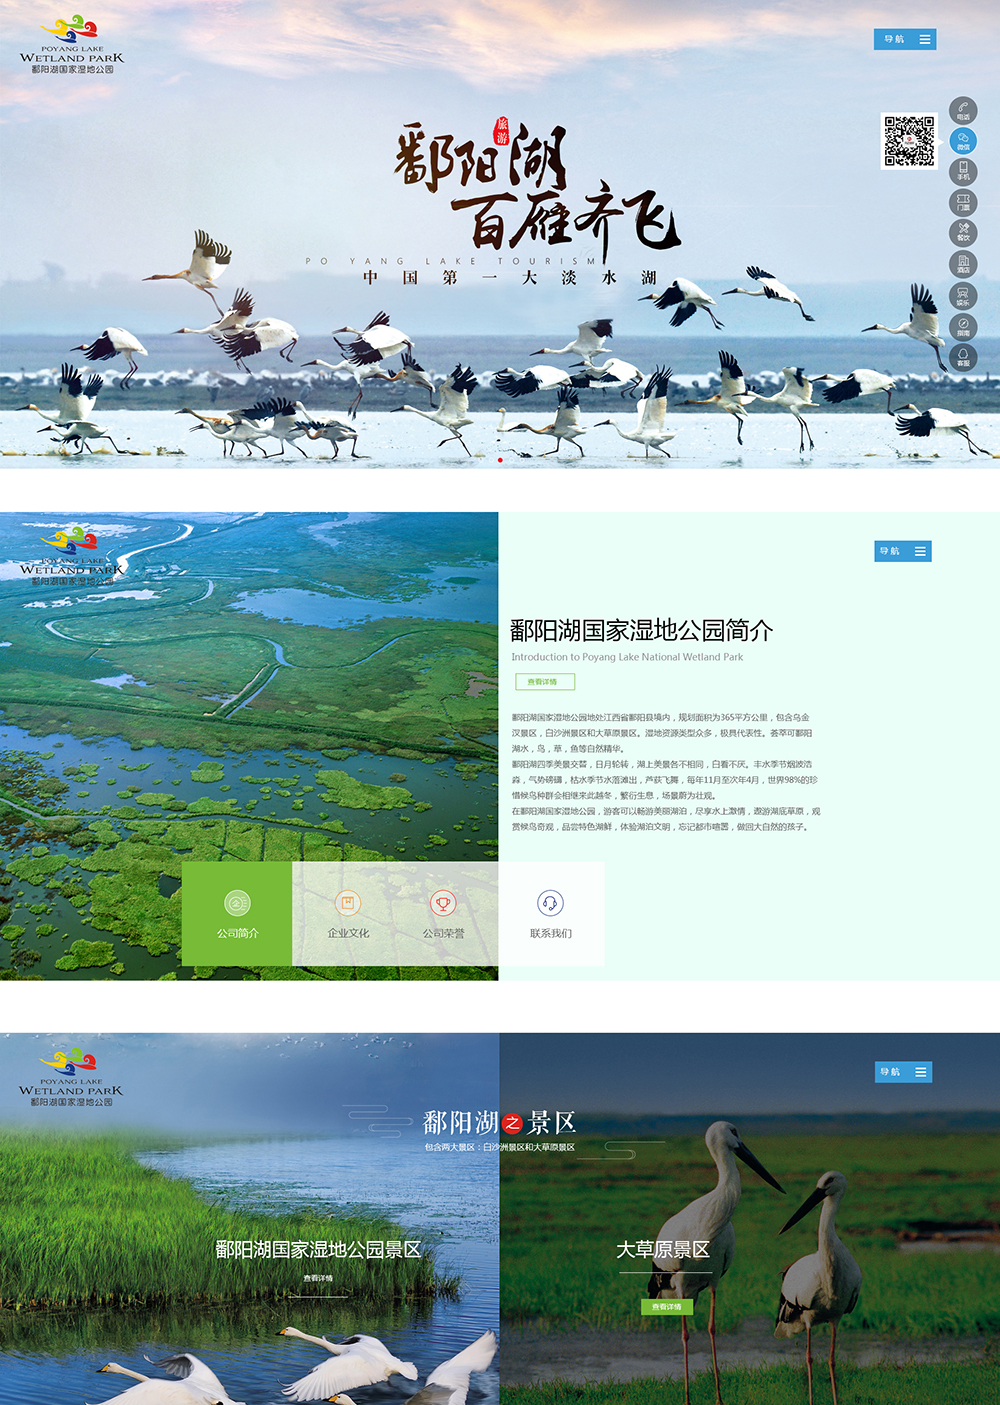 江西鄱阳湖湿地公园旅游开发有限公司_01.jpg